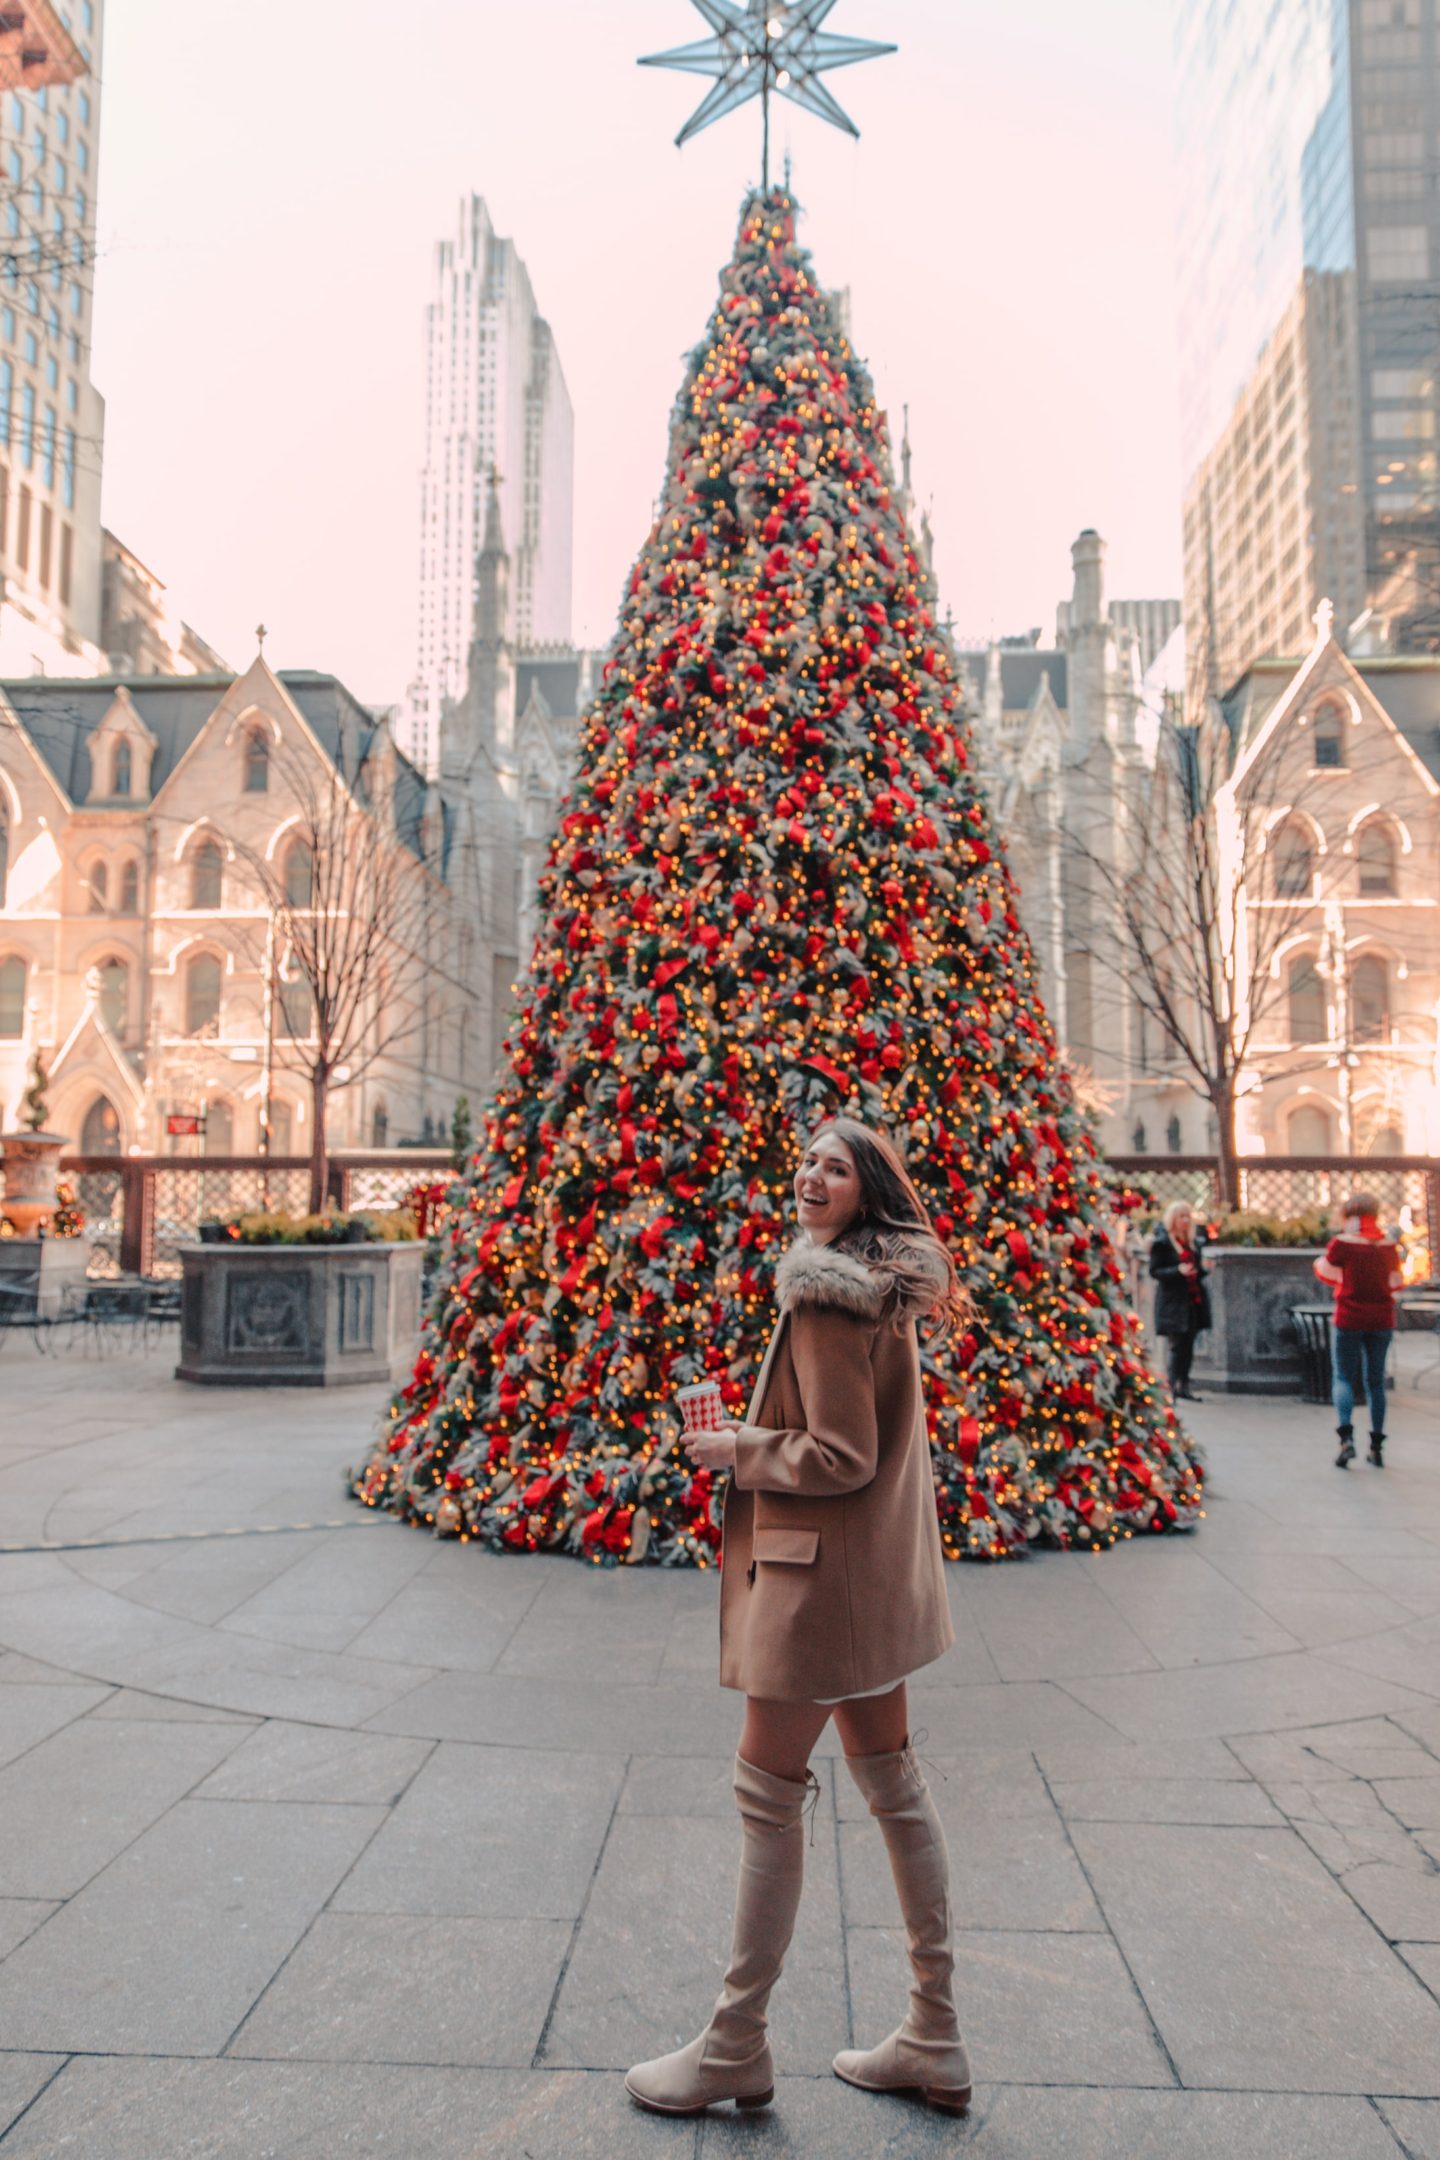 10 Best NYC Christmas Photo Spots for Instagram - Dana Berez